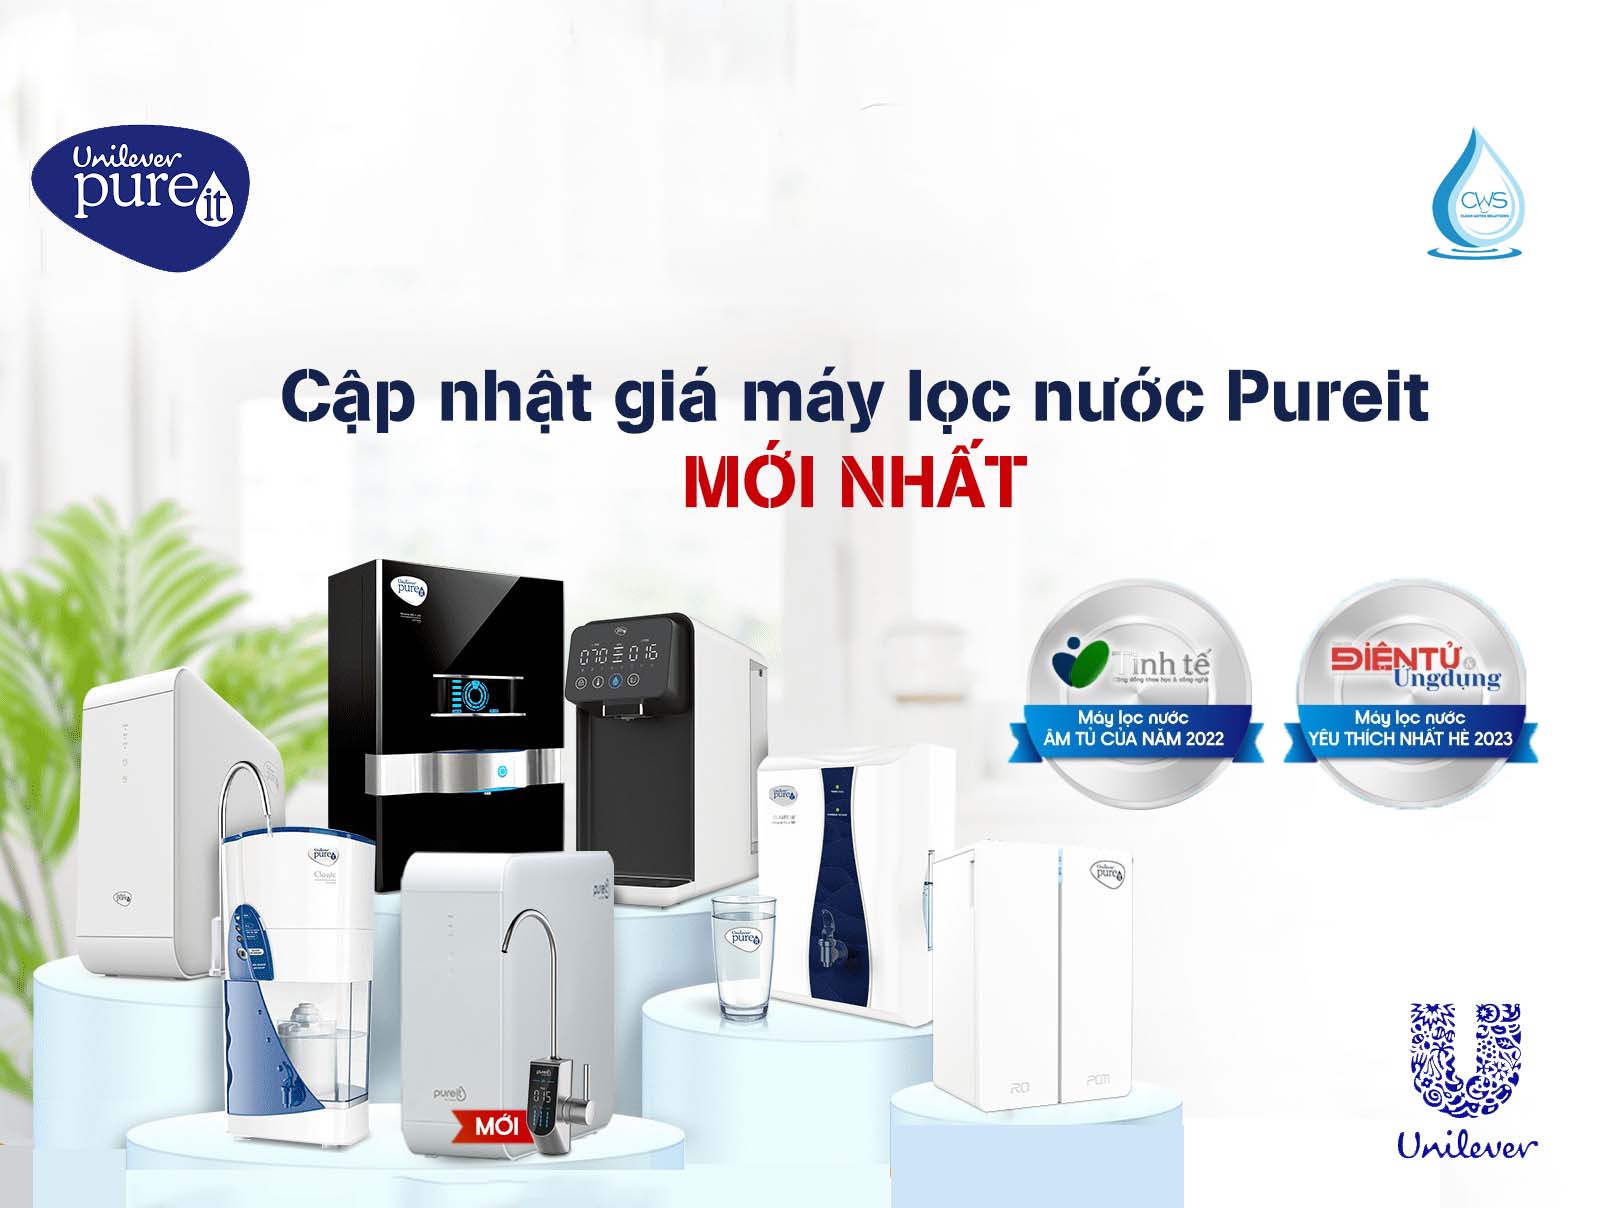 Cập nhật giá máy lọc nước Pureit của tập đoàn Unilever mới nhất